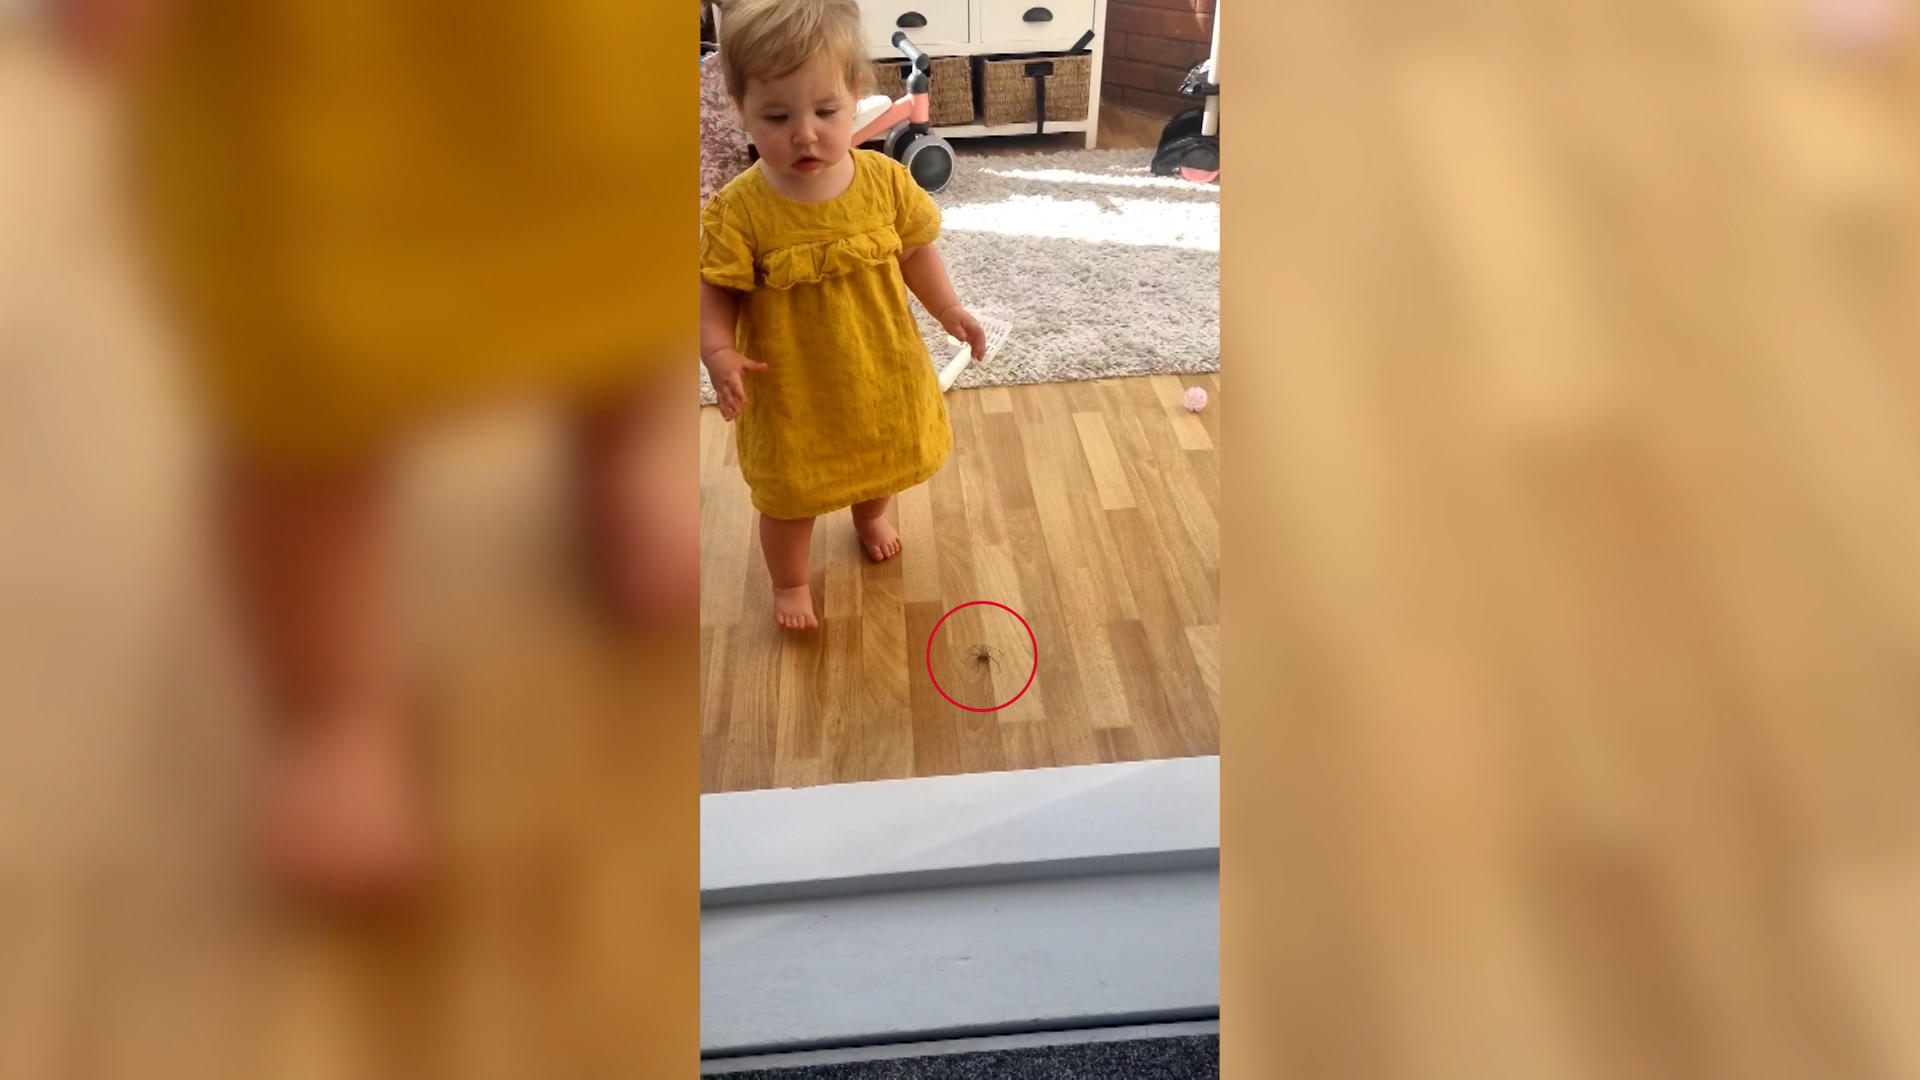 Einjährige tritt beinahe auf Ekelspinne Während Mama filmt